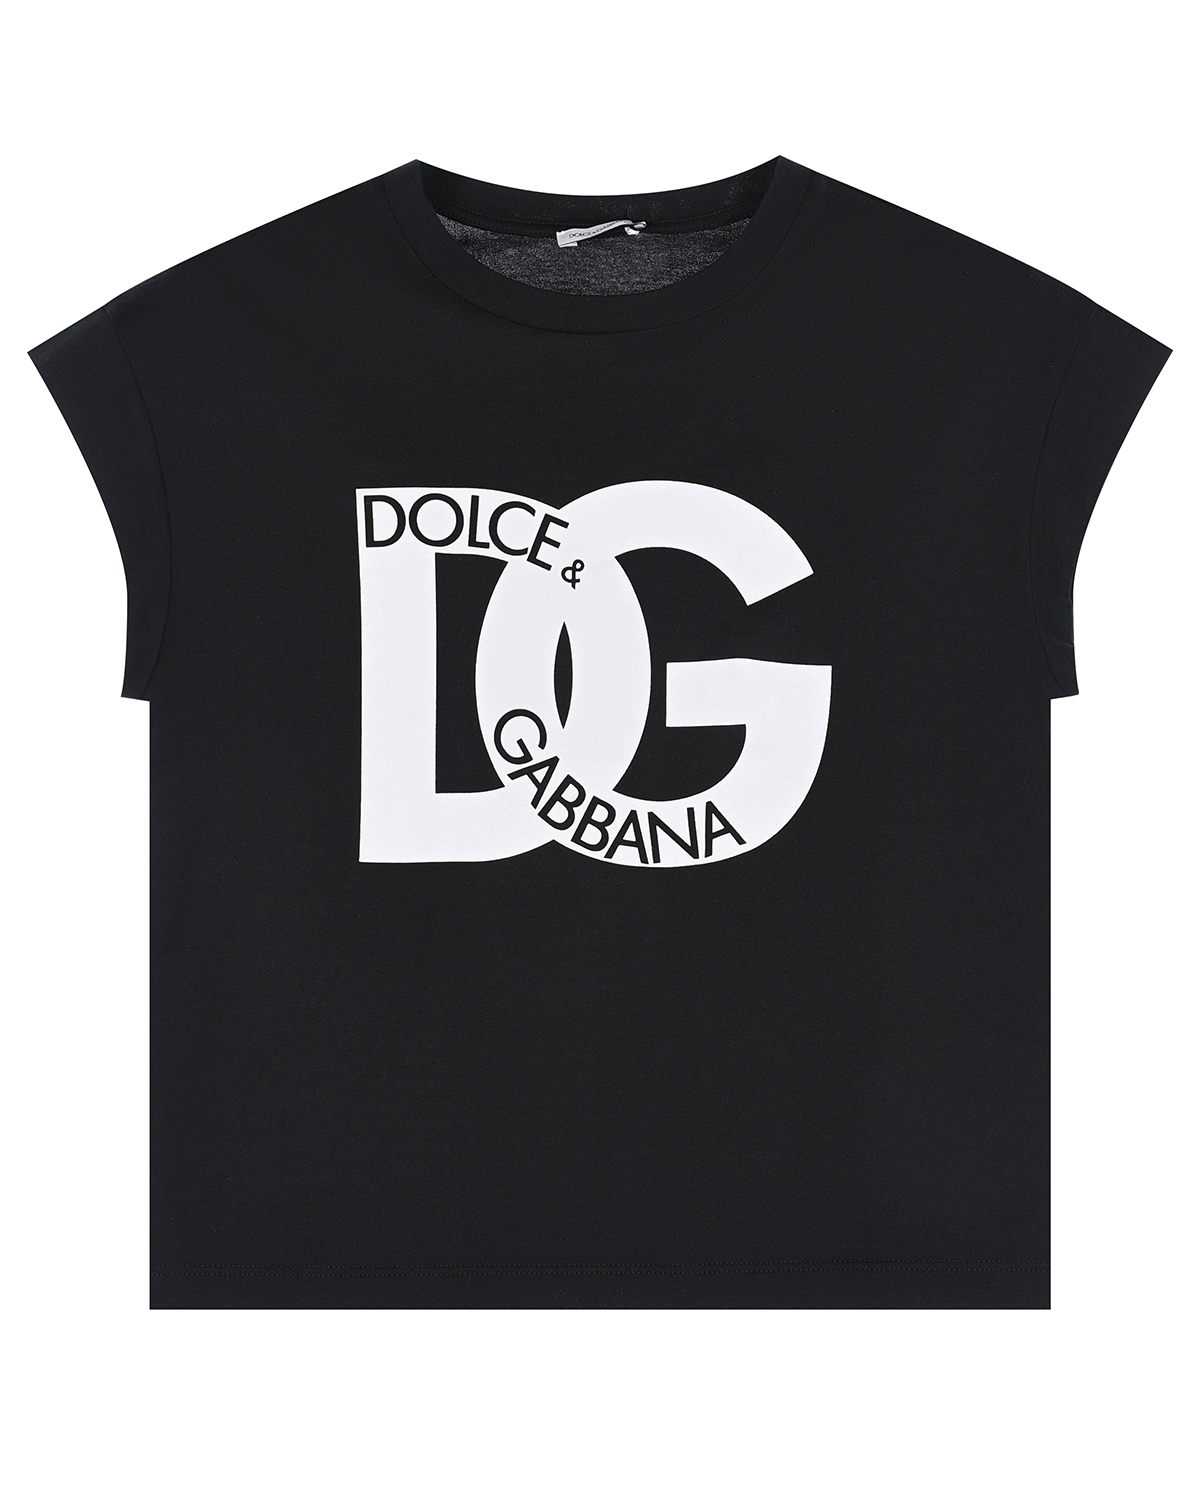 Черная футболка с крупным белым лого Dolce&Gabbana футболка со спущенной линией плеча и крупным принтом черная button blue 128